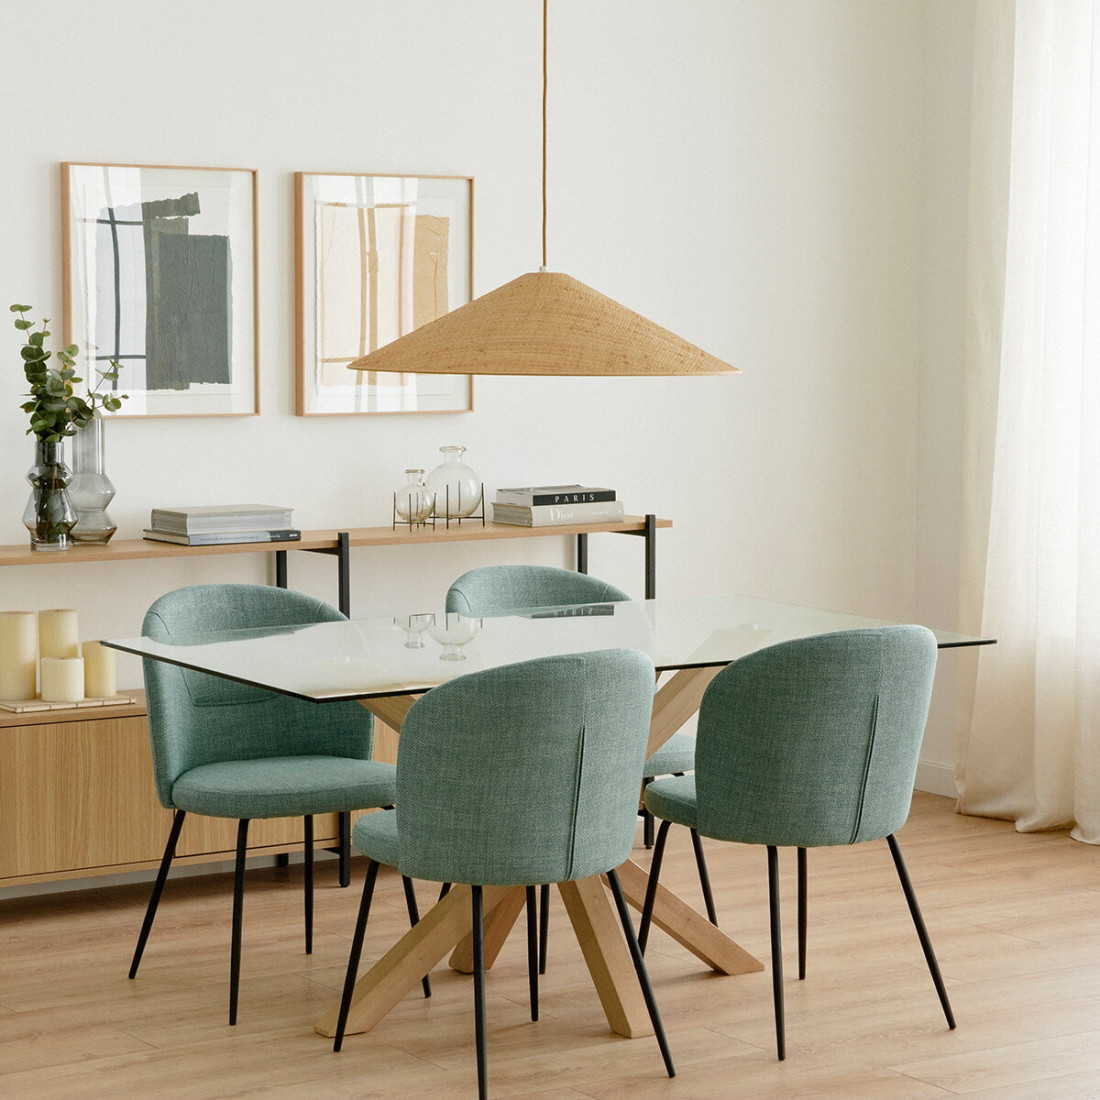 Mesa - Mesas Comedor/Cocina - Comedores - Kenay Home  Mesas de comedor,  Mesas de vidrio comedor, Muebles de comedor modernos